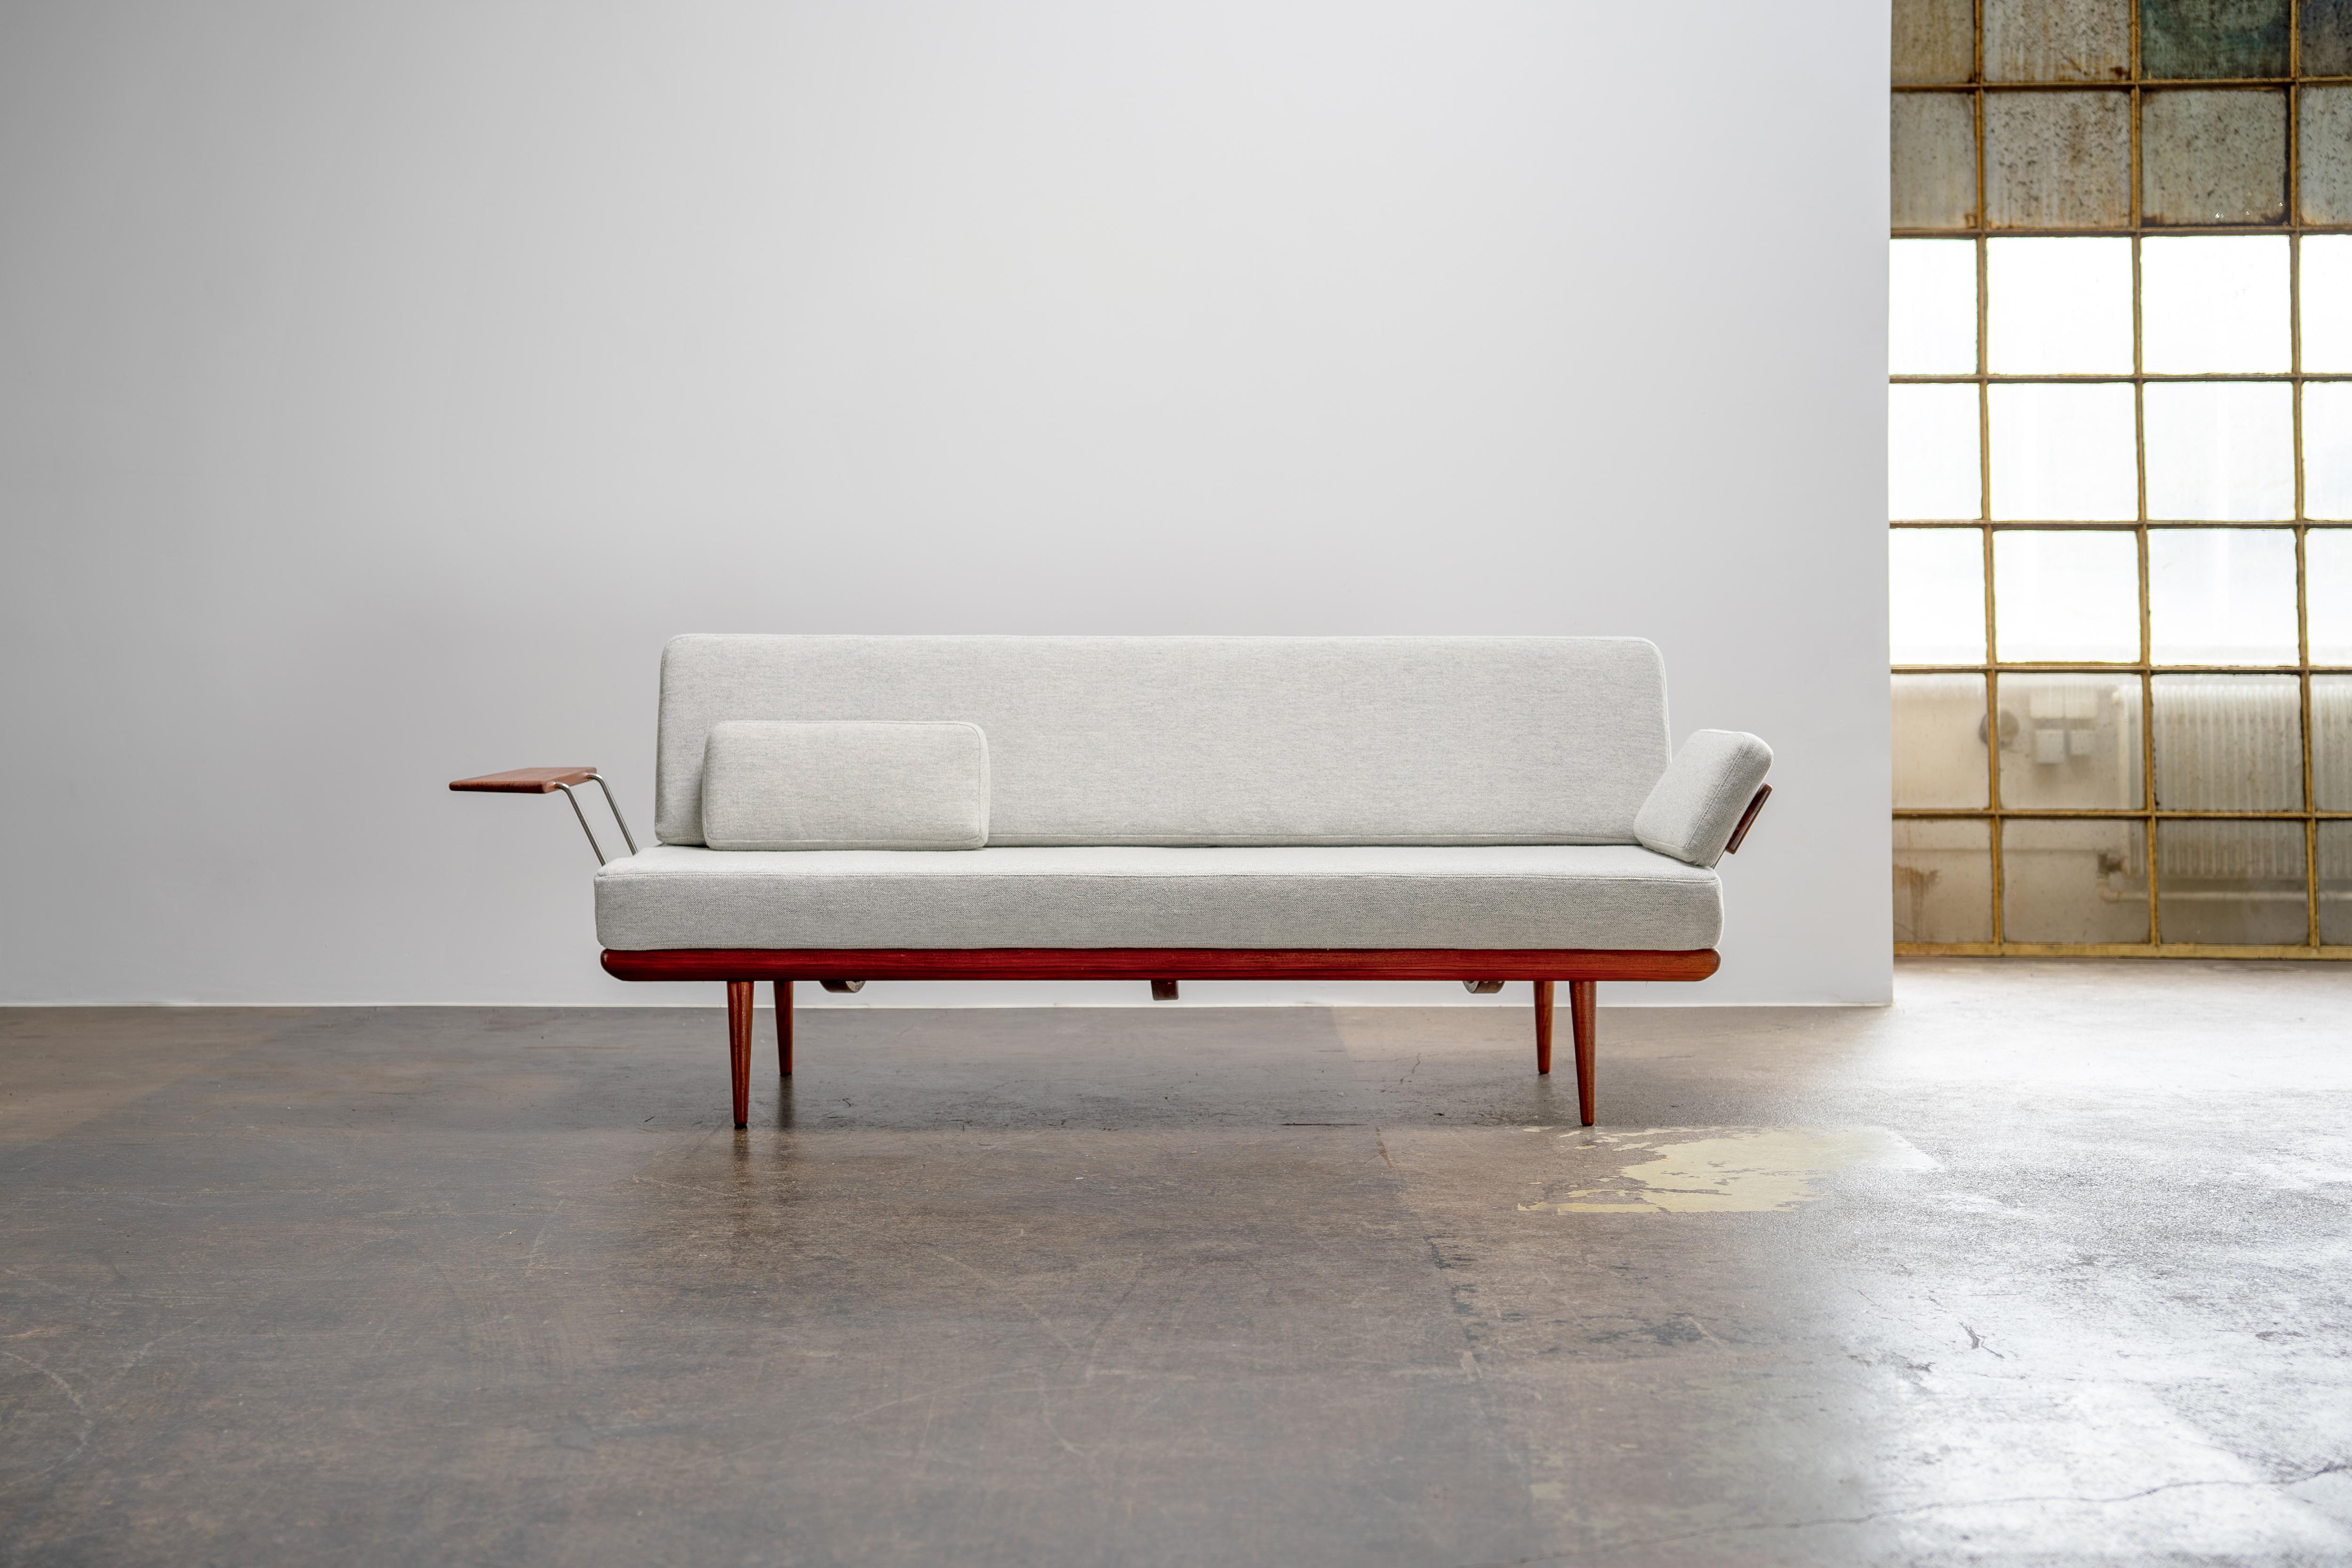 Canapé-lit des années 1960 de France et Søn en bois de teck. Cette pièce est dotée de deux accoudoirs rembourrés. La pièce a été restaurée et recouverte d'un tissu gris clair 